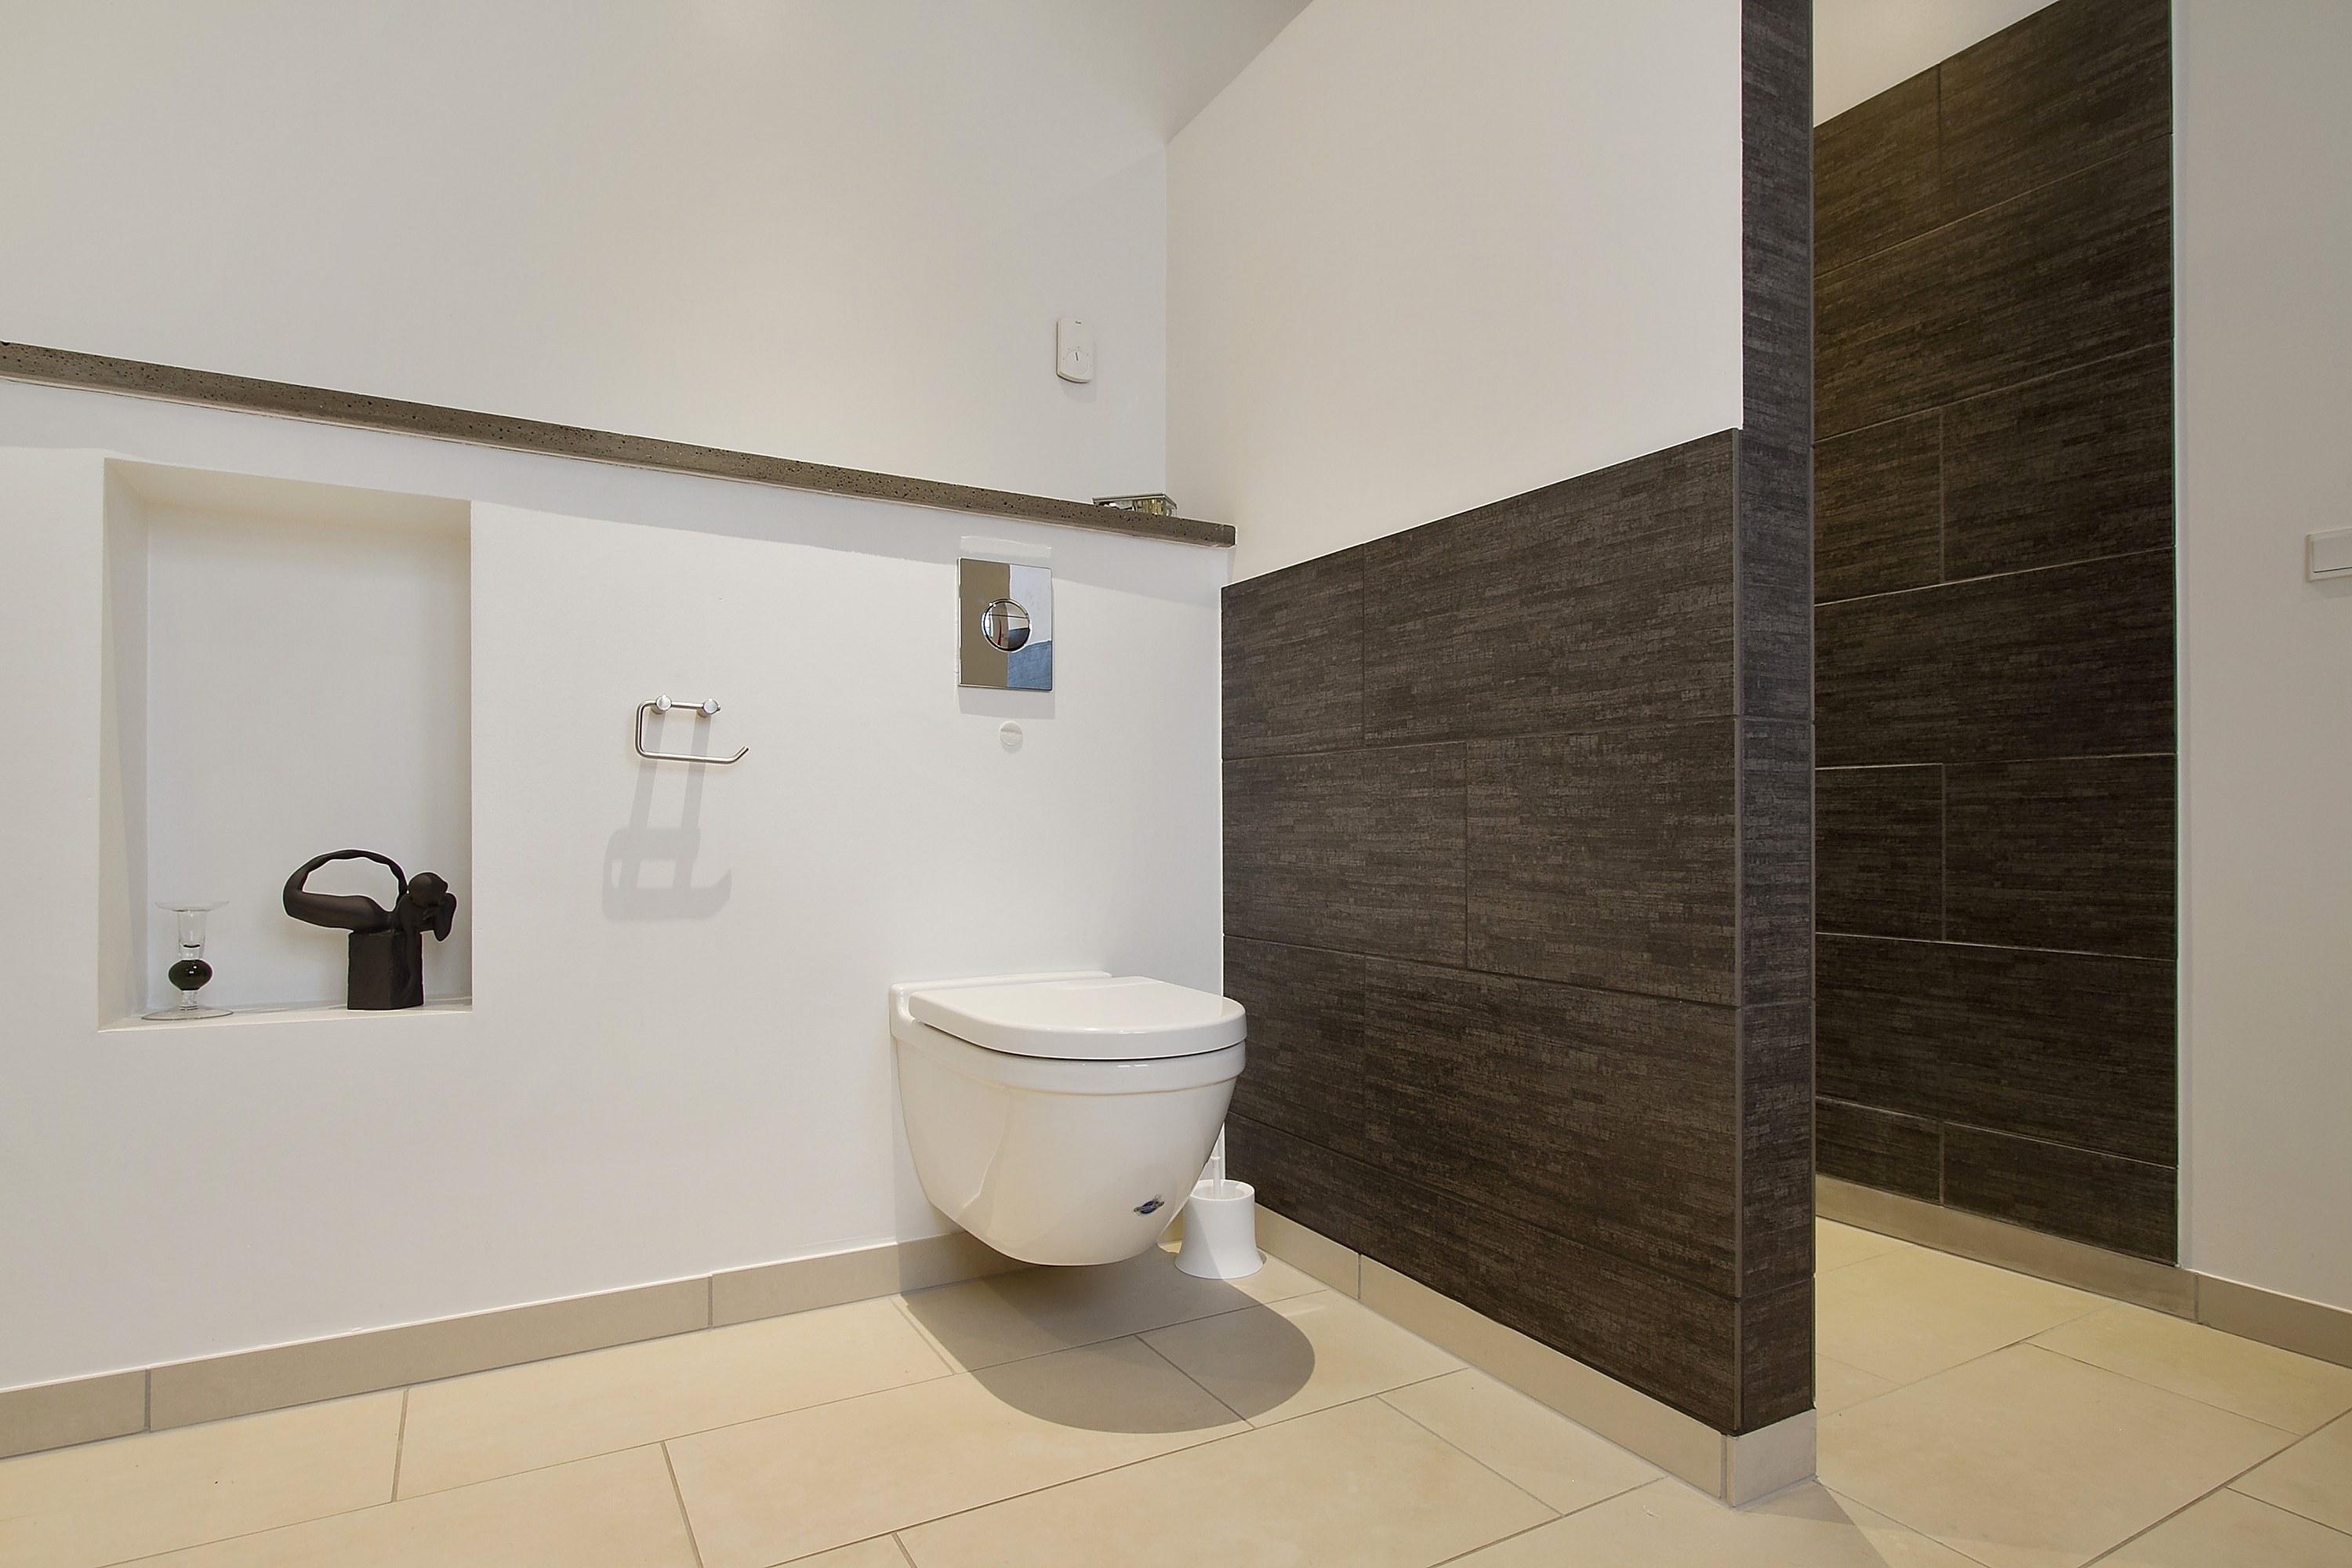 Din guide til at vælge gulv på badeværelset – Få mere viden her